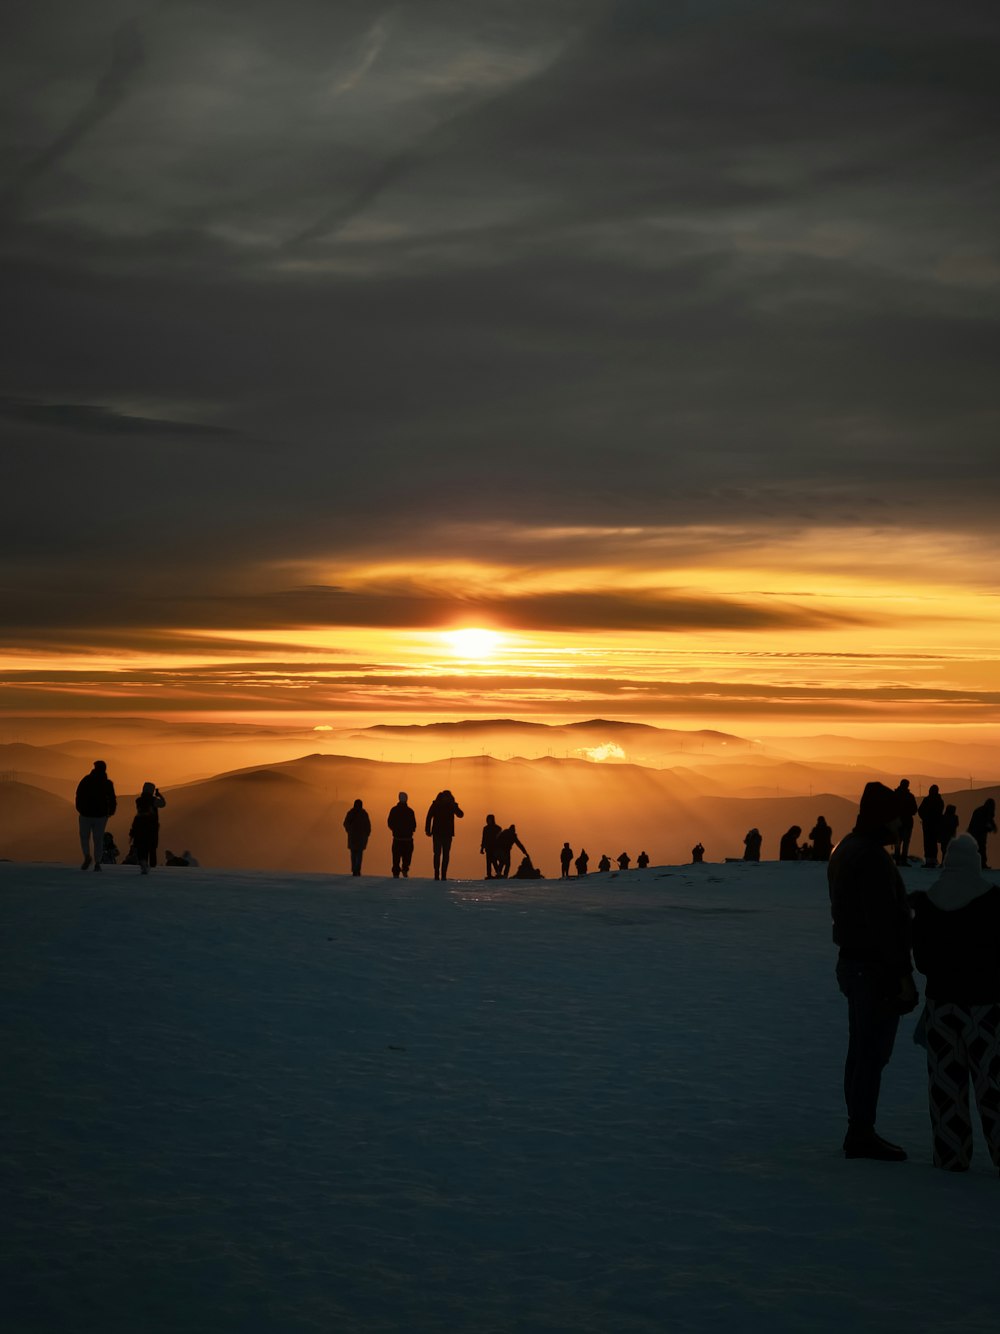 um grupo de pessoas em pé no topo de uma encosta coberta de neve